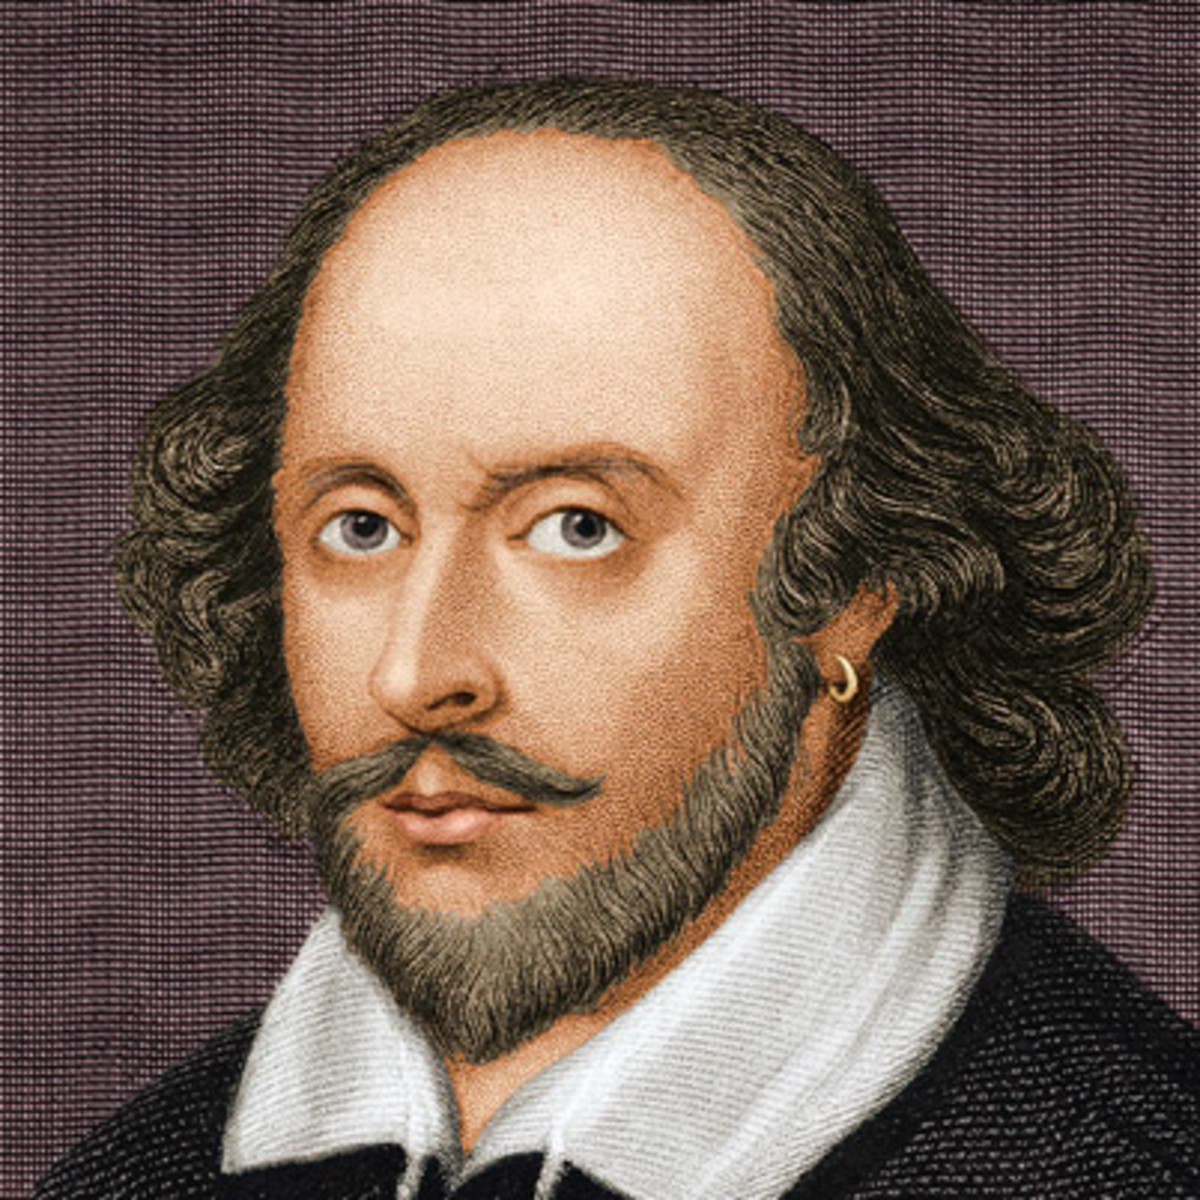 Author William Shakespeare